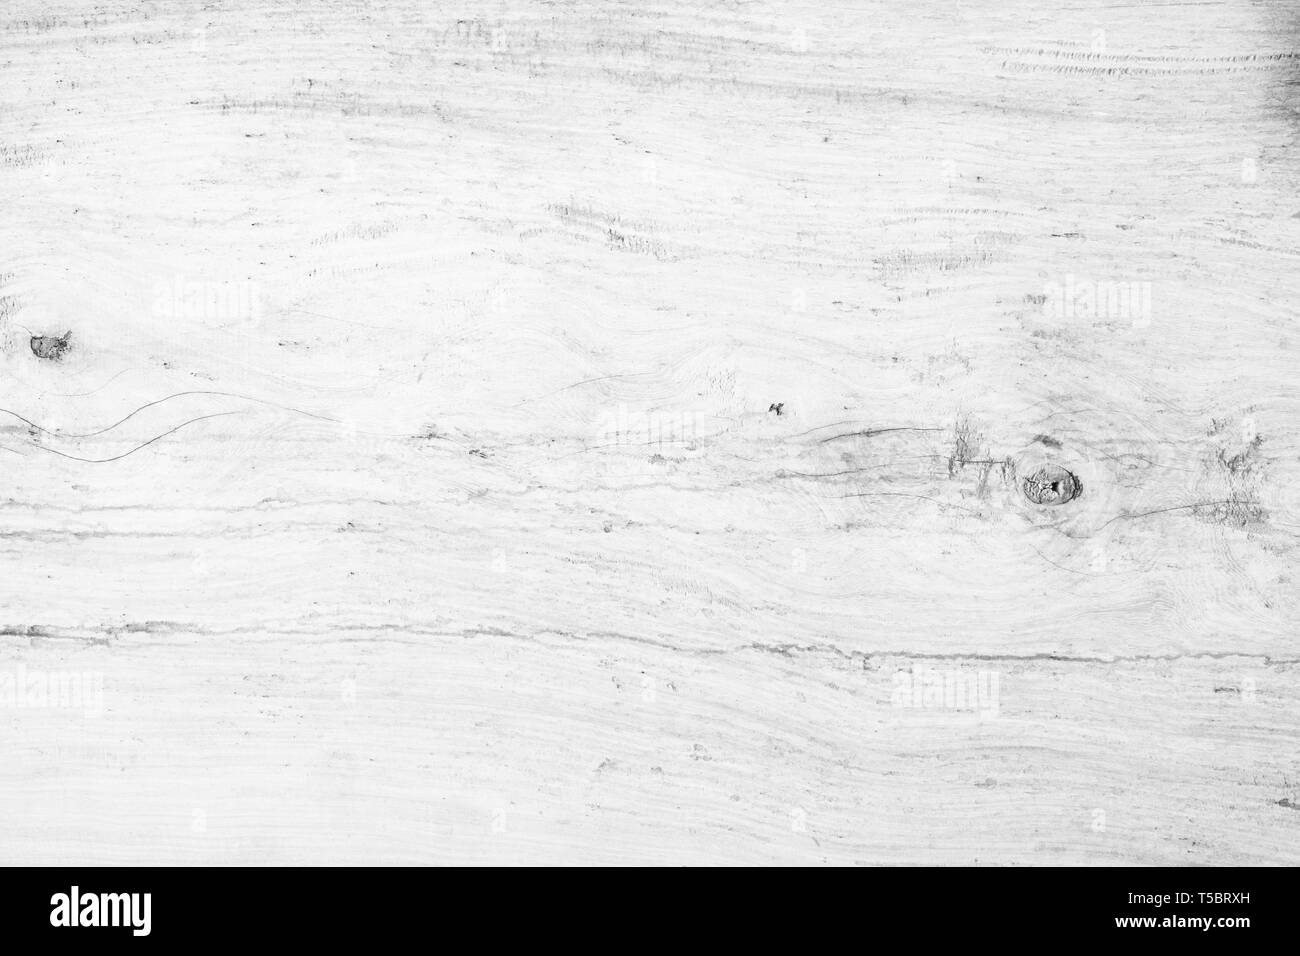 Vue de dessus de table en bois de chêne naturel light blanc fond couleur. Plancher en bois gris de grain propre toile panneau de bouleau avec langage régulièrement l'pâle conseil Banque D'Images